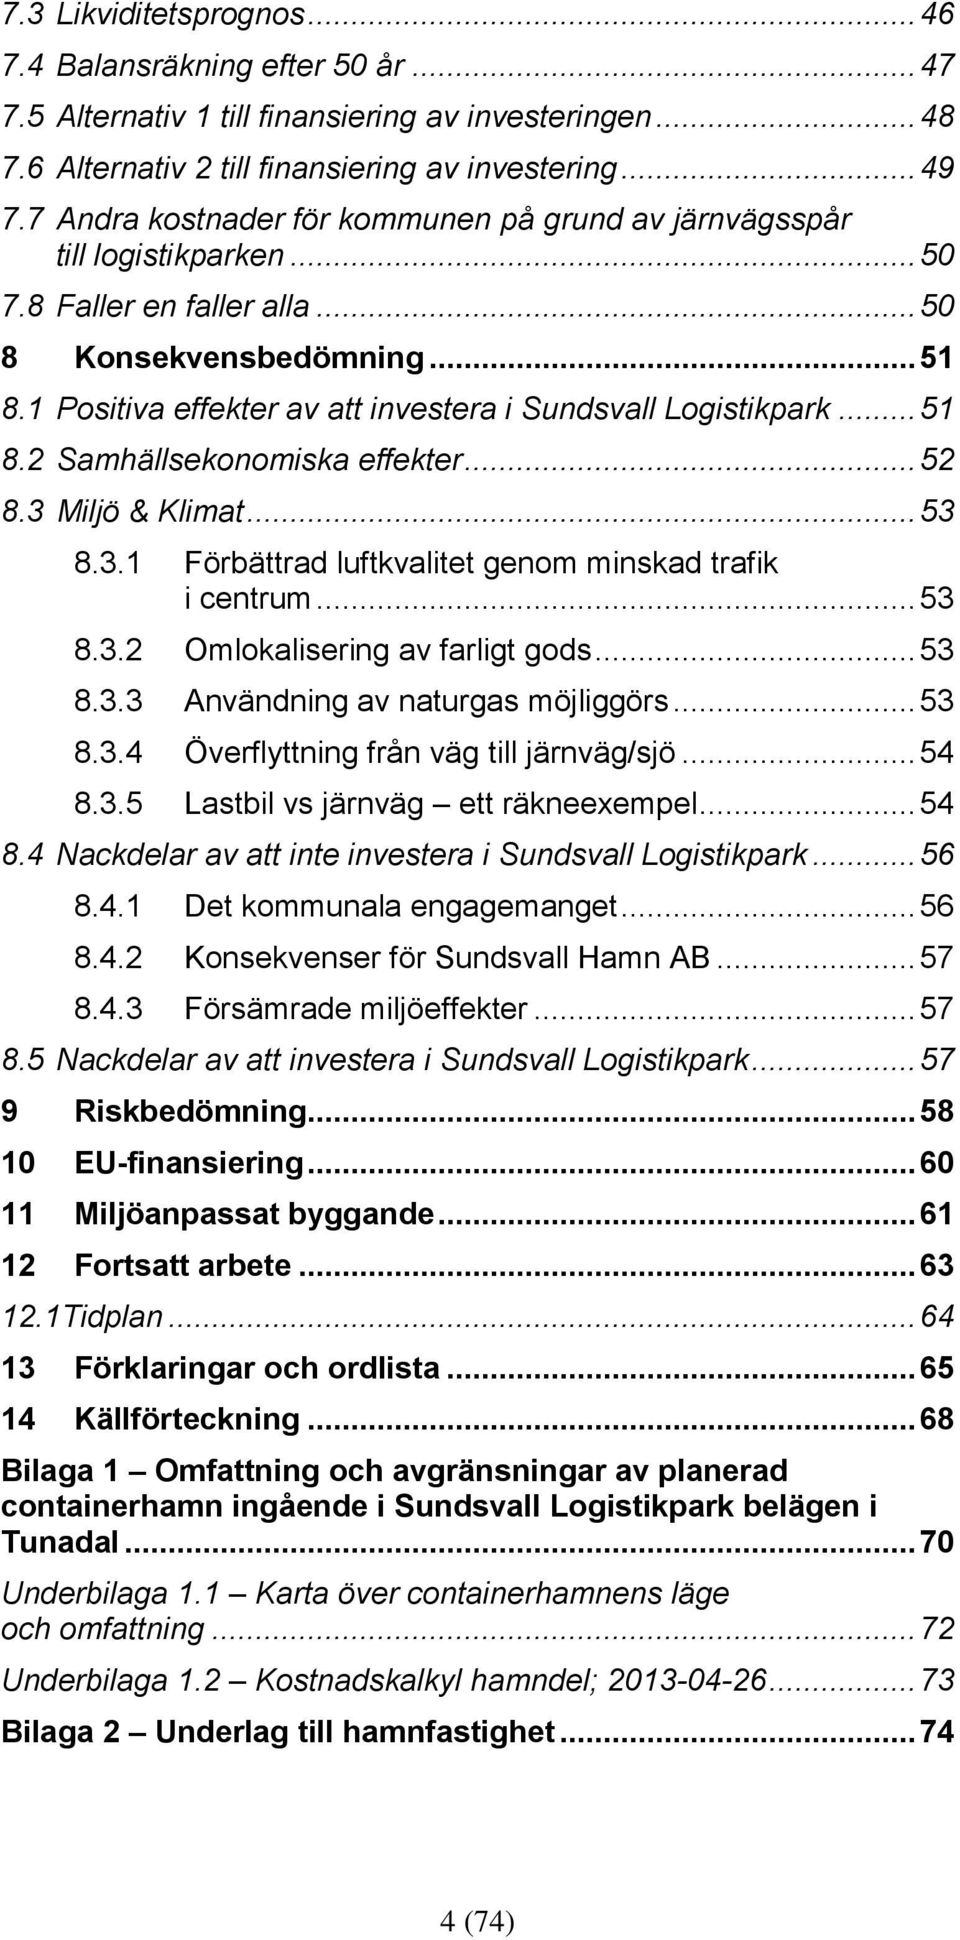 1 Positiva effekter av att investera i Sundsvall Logistikpark... 51 8.2 Samhällsekonomiska effekter... 52 8.3 Miljö & Klimat... 53 8.3.1 Förbättrad luftkvalitet genom minskad trafik i centrum... 53 8.3.2 Omlokalisering av farligt gods.